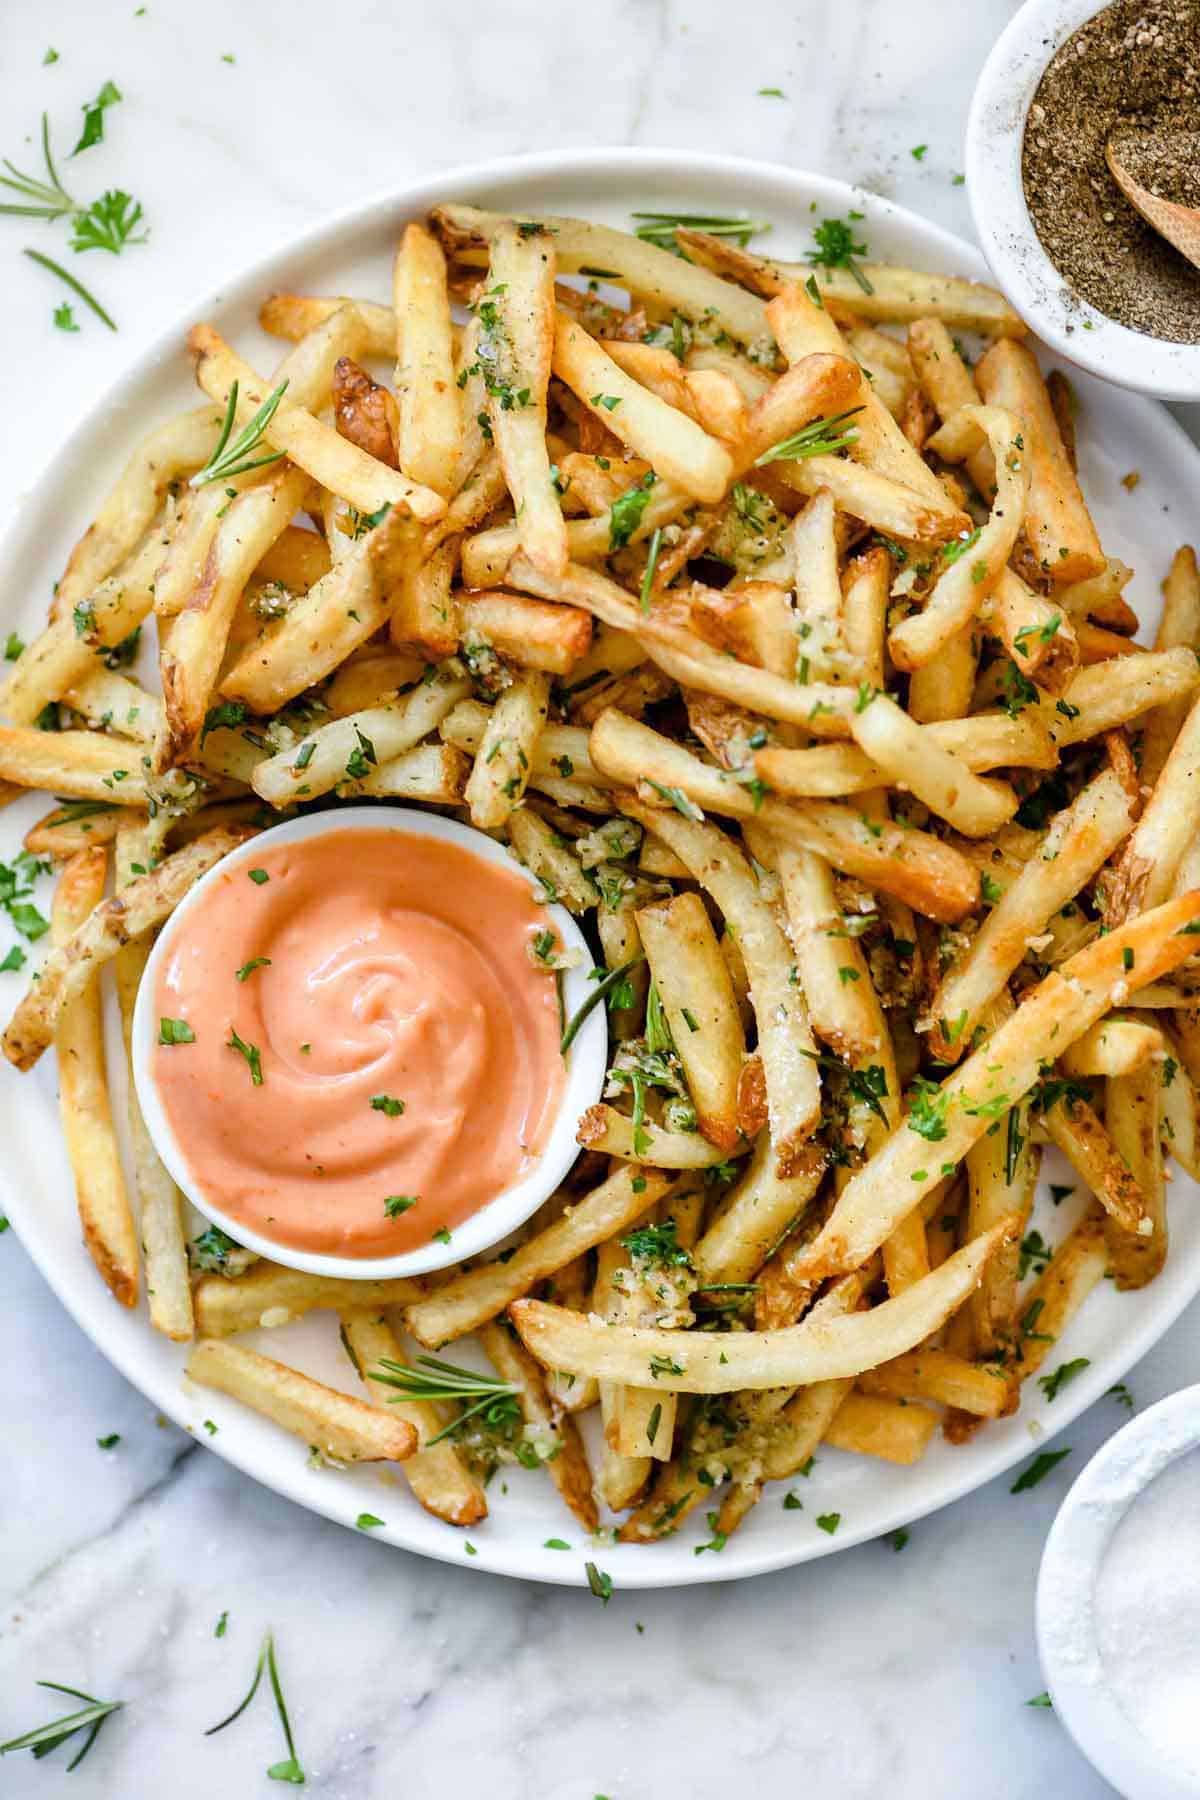 Rosemary garlic fries